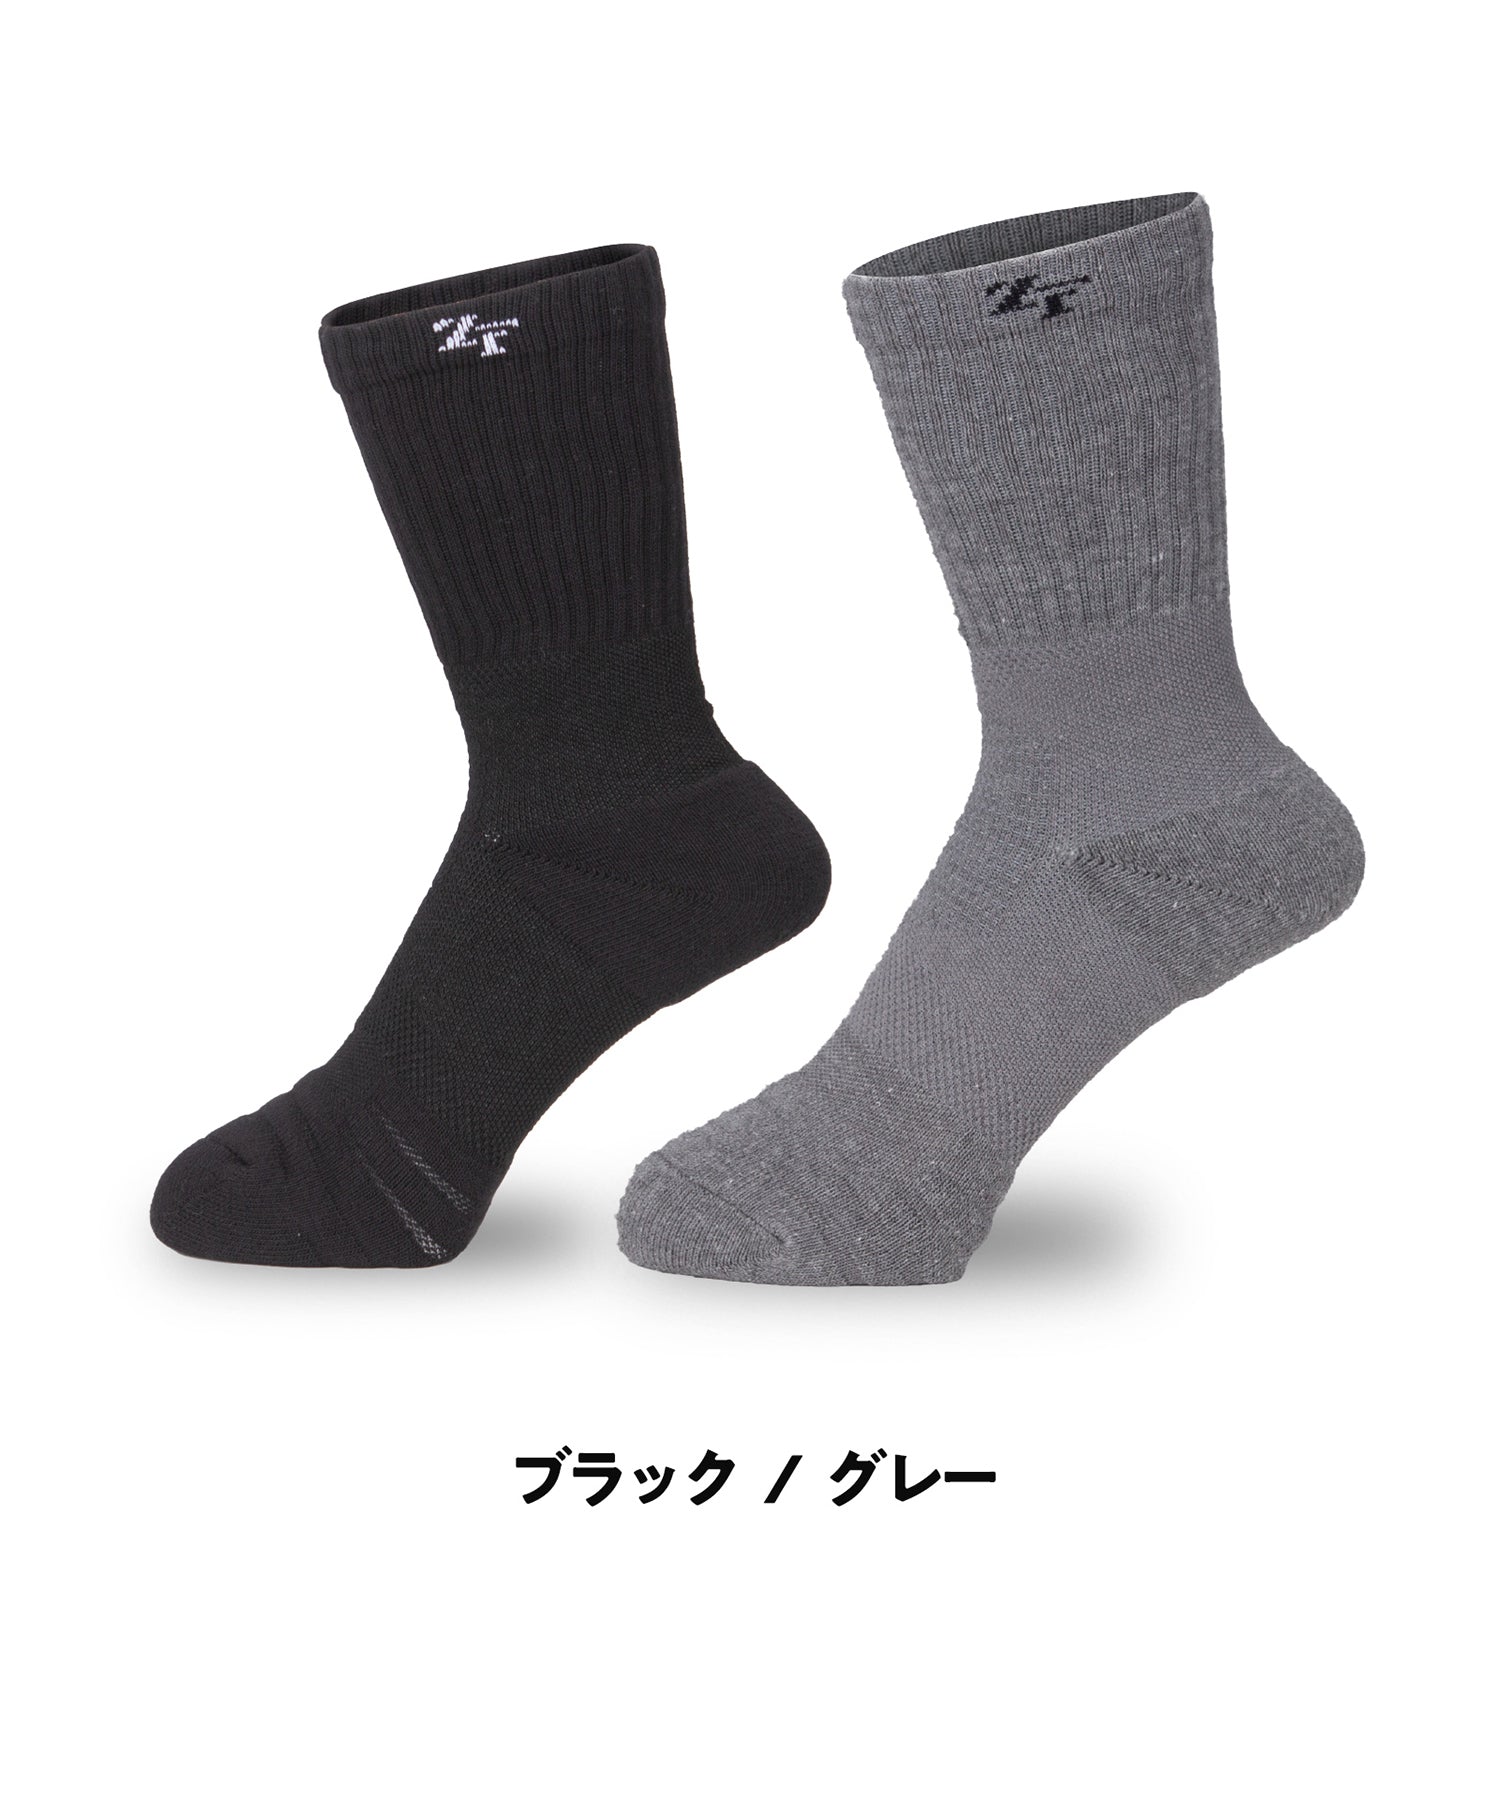 Cross socks, medium